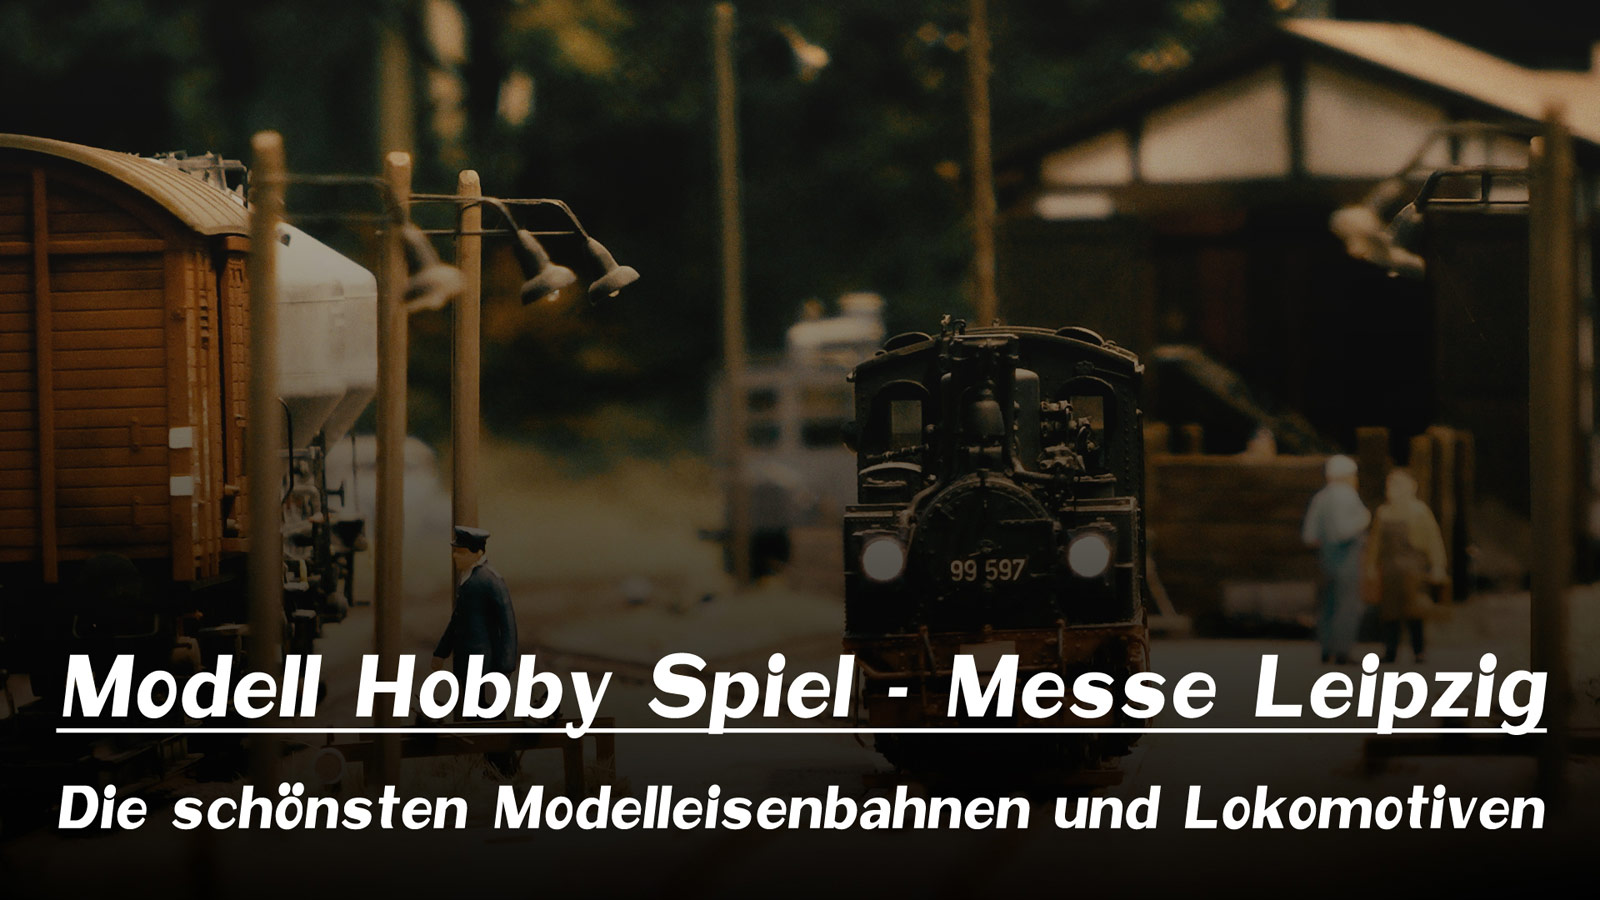 Pennula bei Prime Video: Modell Hobby Spiel - Messe Leipzig - Die schönsten Modelleisenbahnen und Lokomotiven